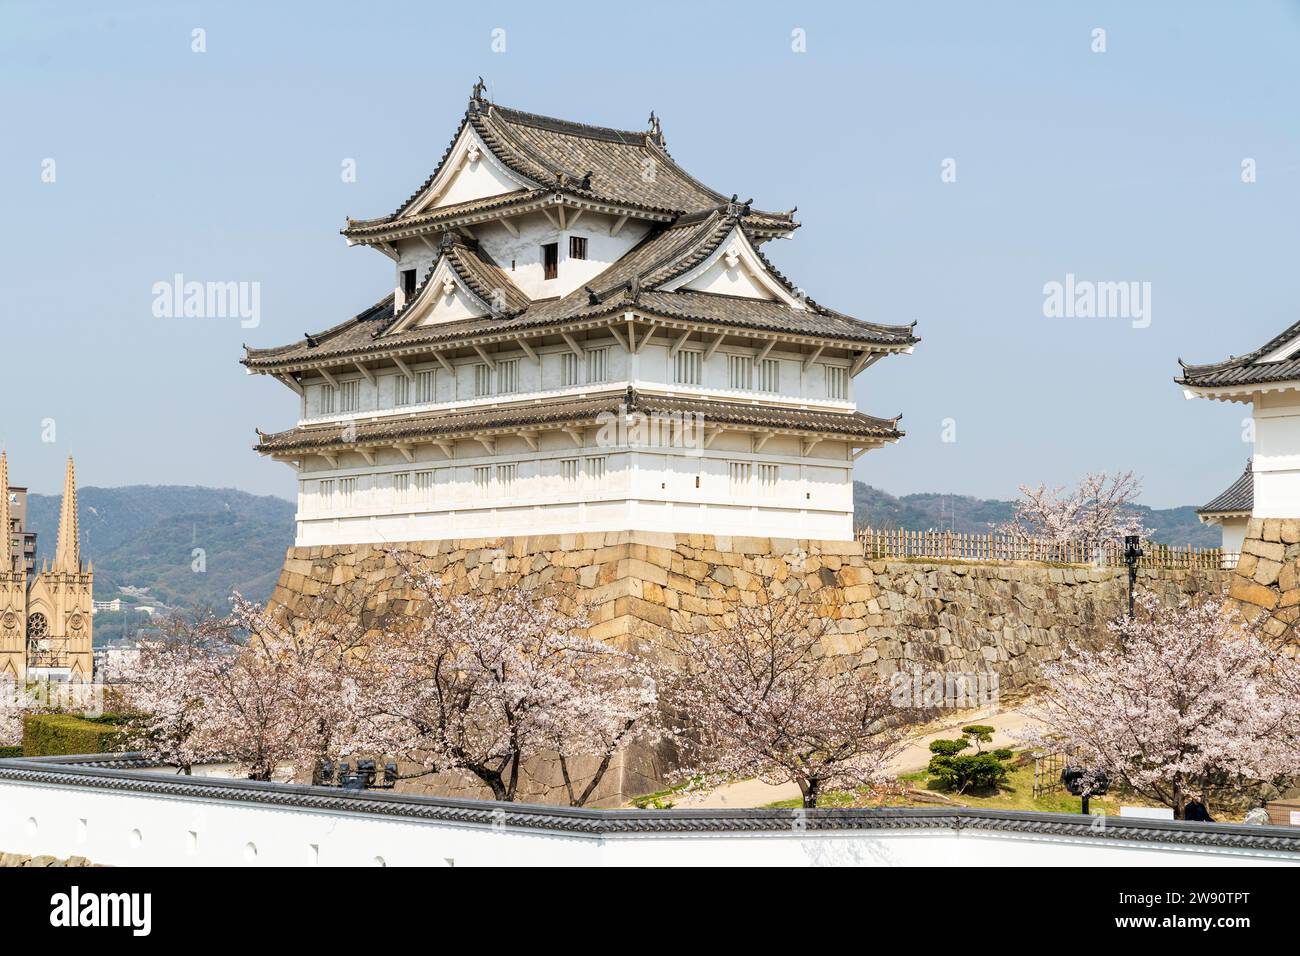 Le coin Fushimi yagura, tourelle de trois étages sur les murs de pierre Ishigaki au château de Fukuyama au Japon. Jour, avec ciel bleu, et cerisier en fleur. Banque D'Images